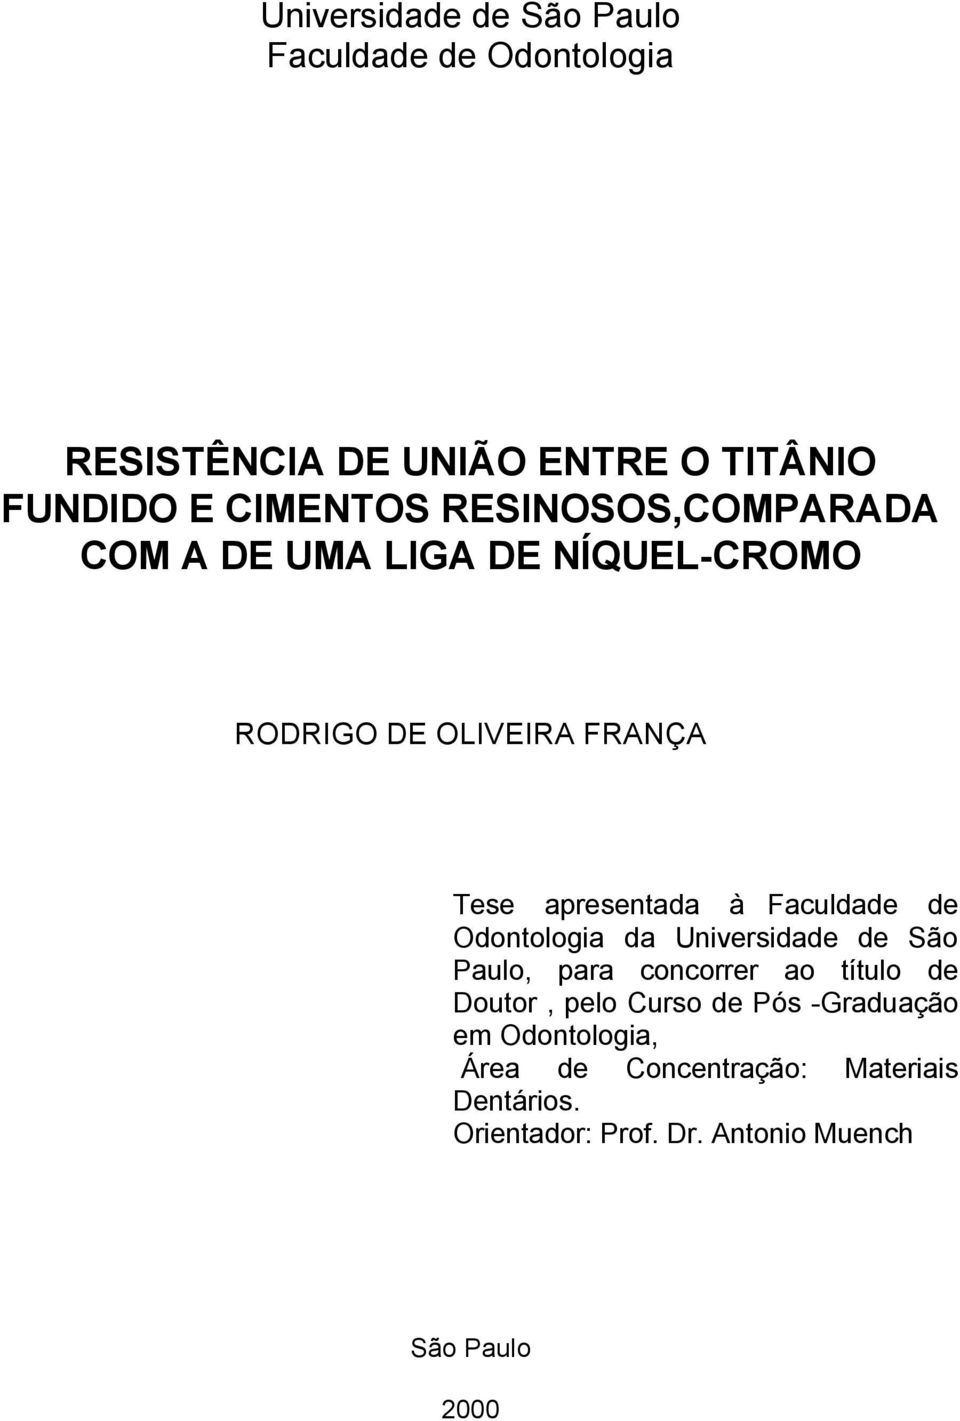 de Odontologia da Universidade de São Paulo, para concorrer ao título de Doutor, pelo Curso de Pós -Graduação